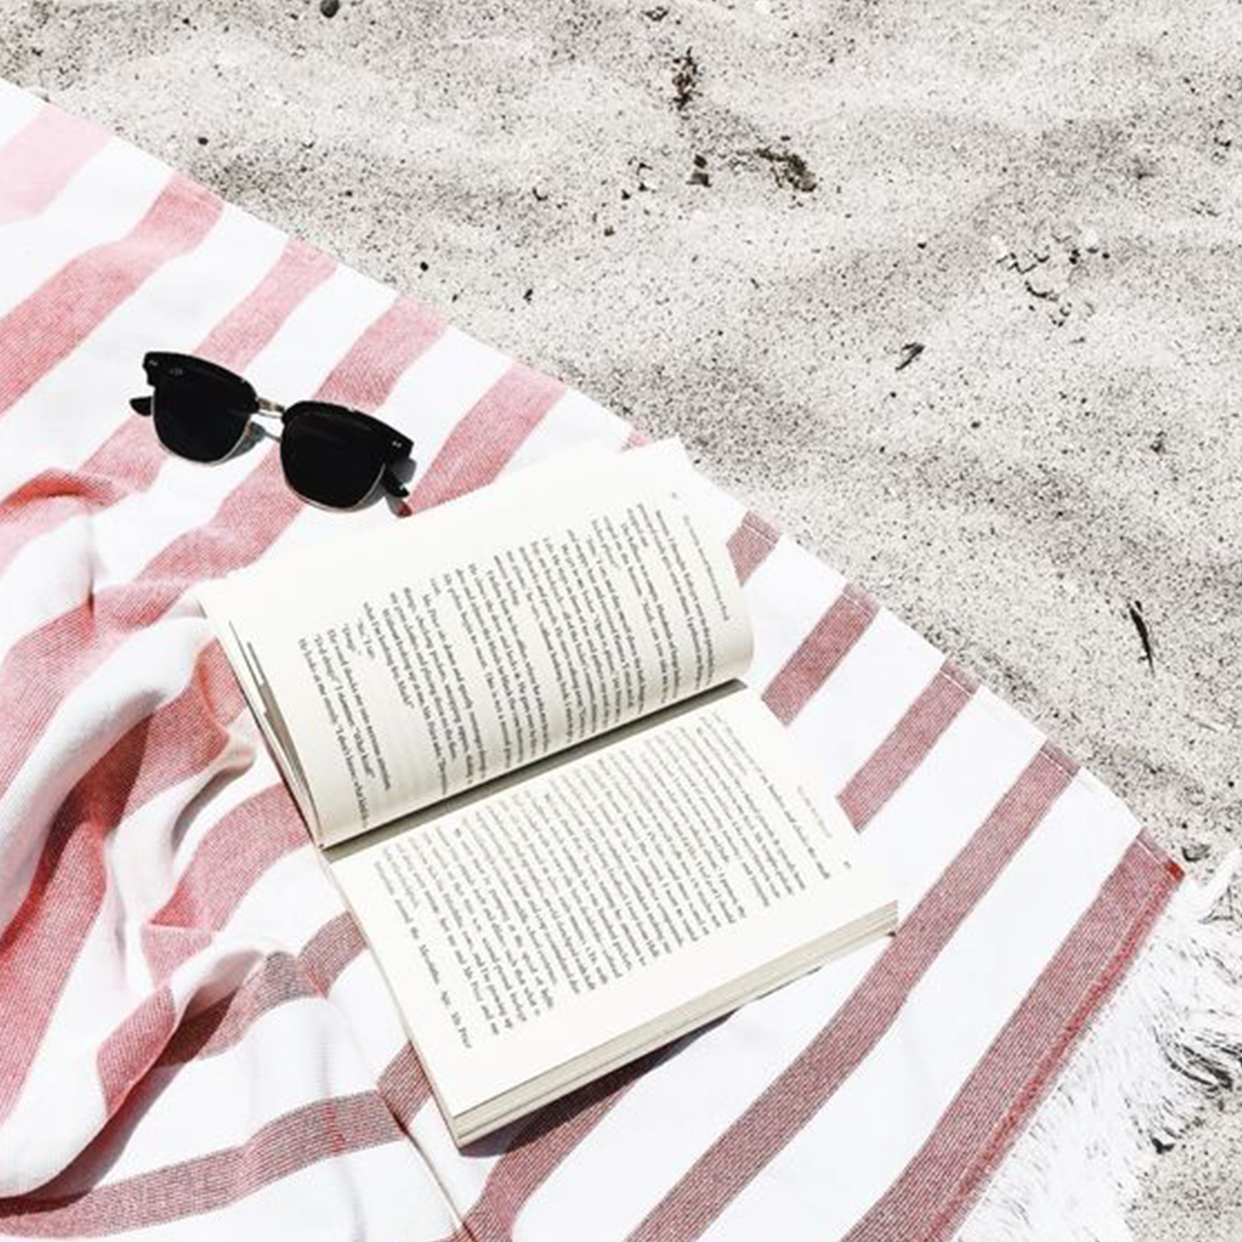 Le seul livre à lire sur la plage